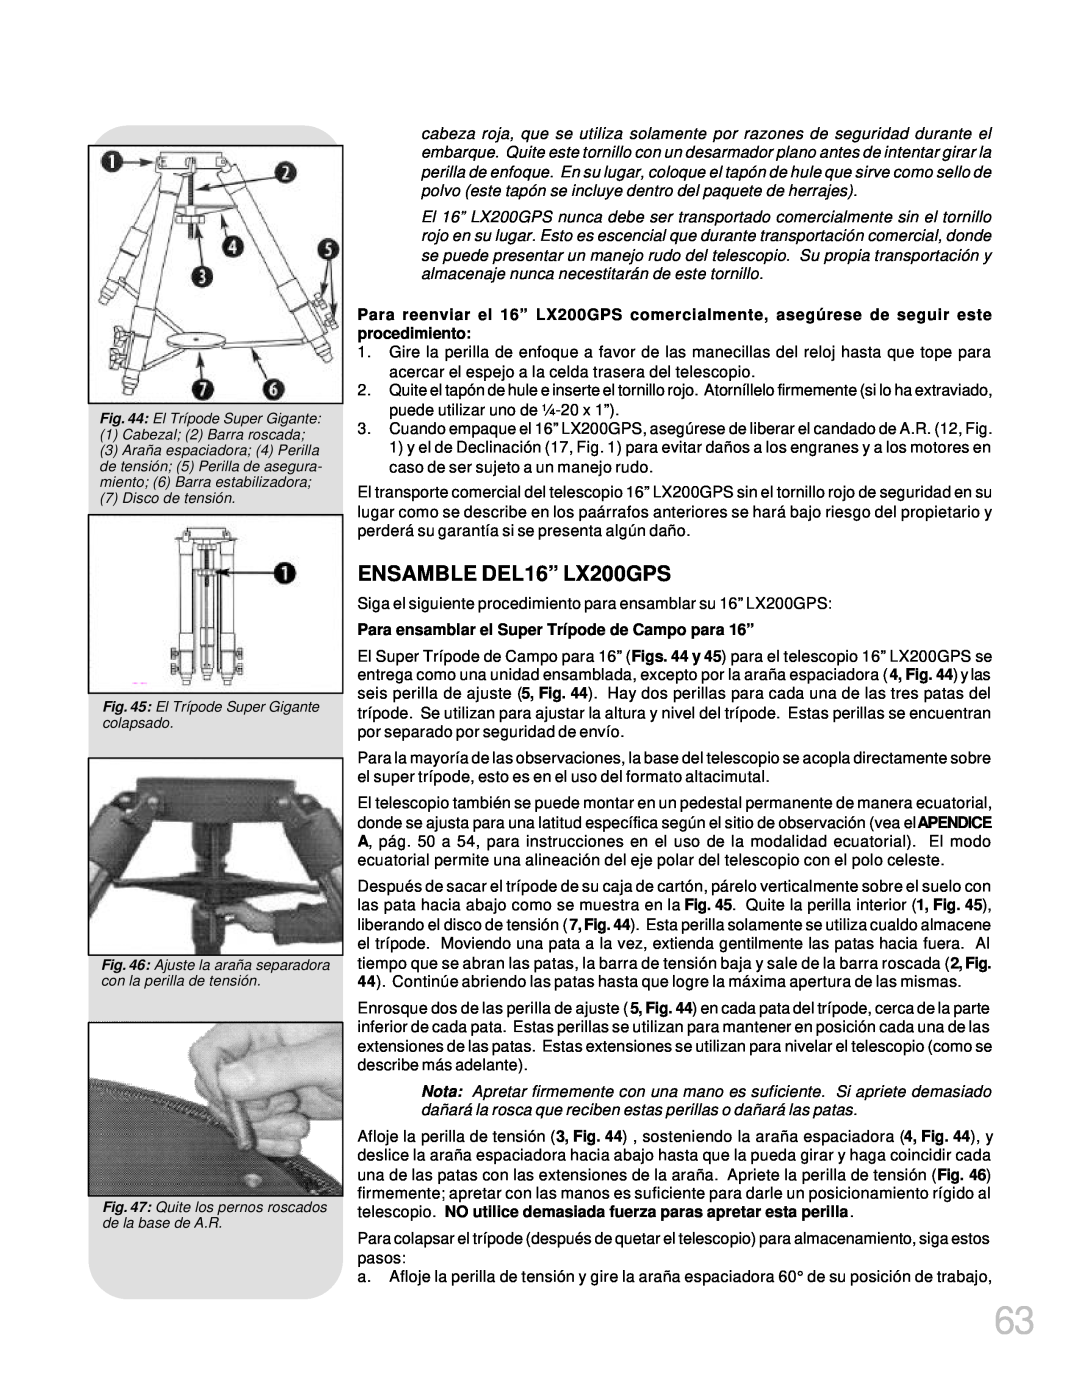 Meade manual ENSAMBLE DEL16” LX200GPS, Para ensamblar el Super Trípode de Campo para 16” 